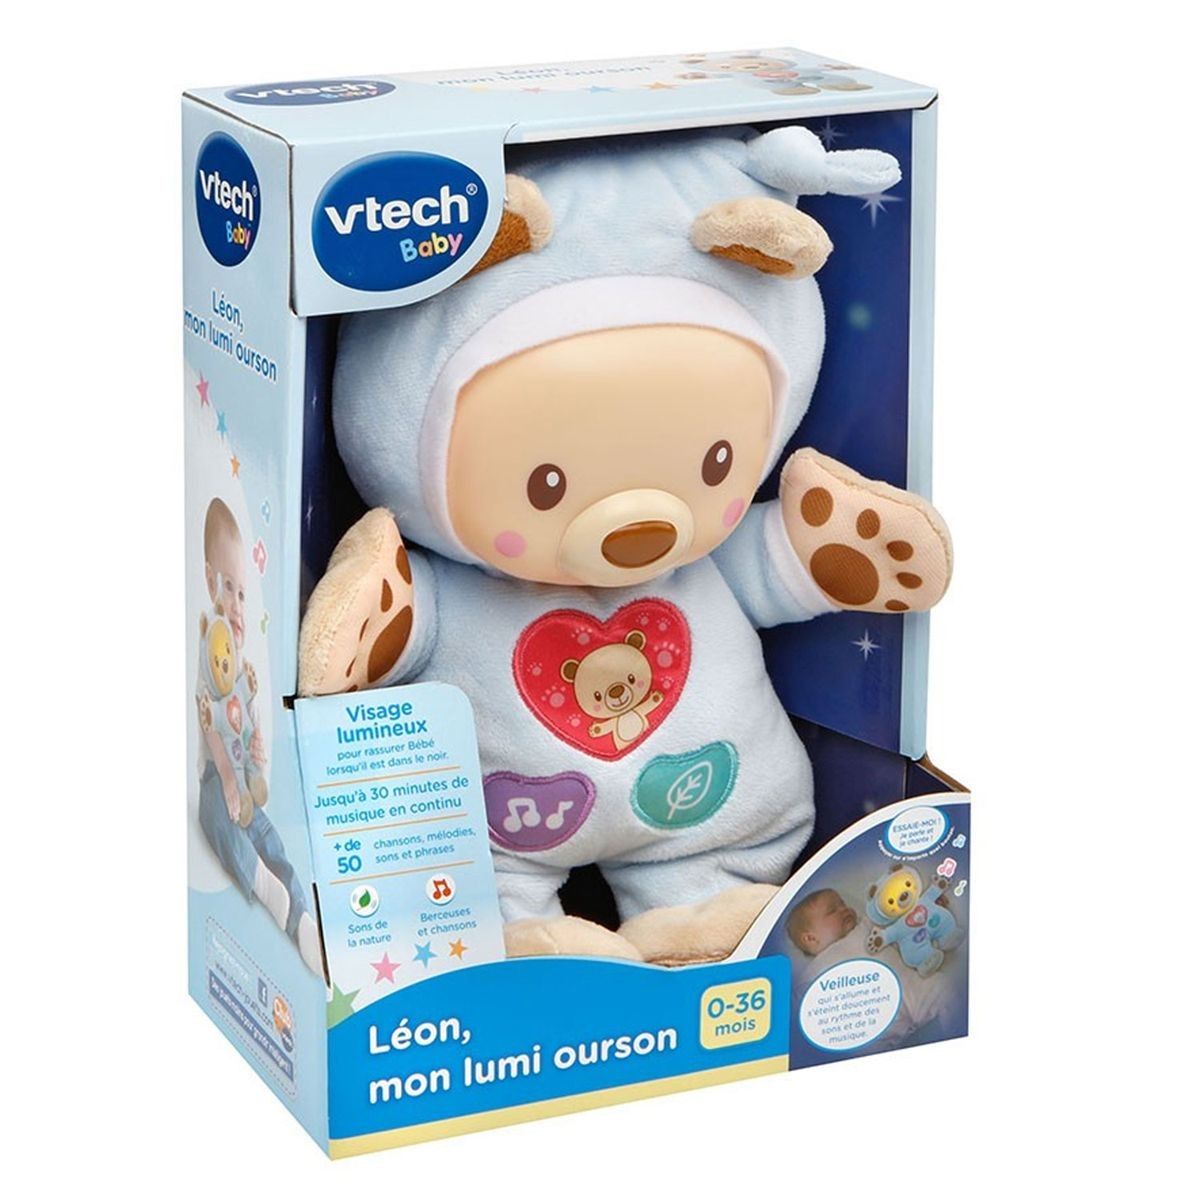 Vtech baby - mon ourson lumi dodo VTECH BABY Pas Cher 